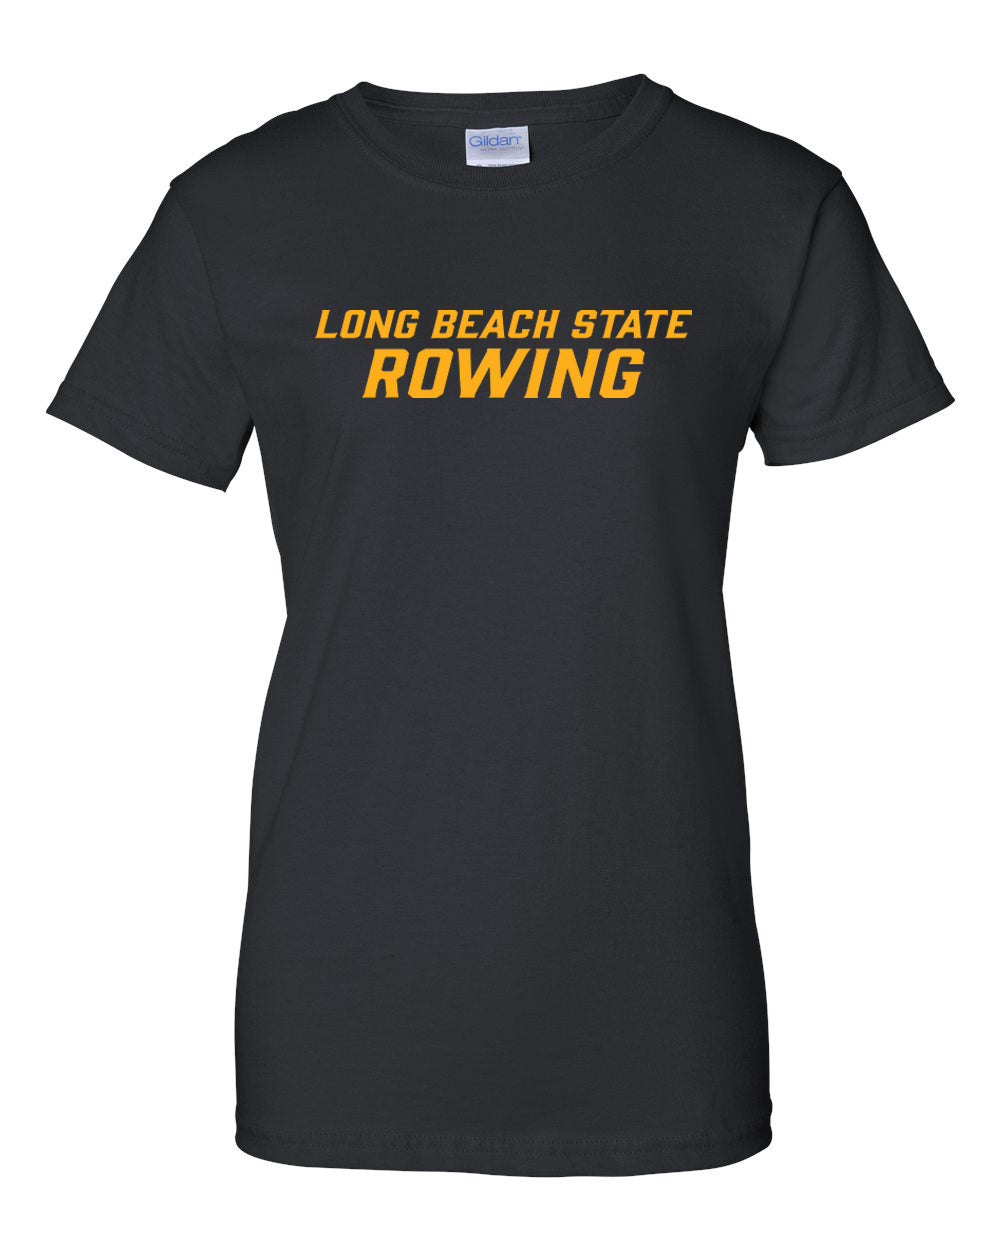 100% Cotton Long Beach Rowing Women's Team Spirit T-Shirt